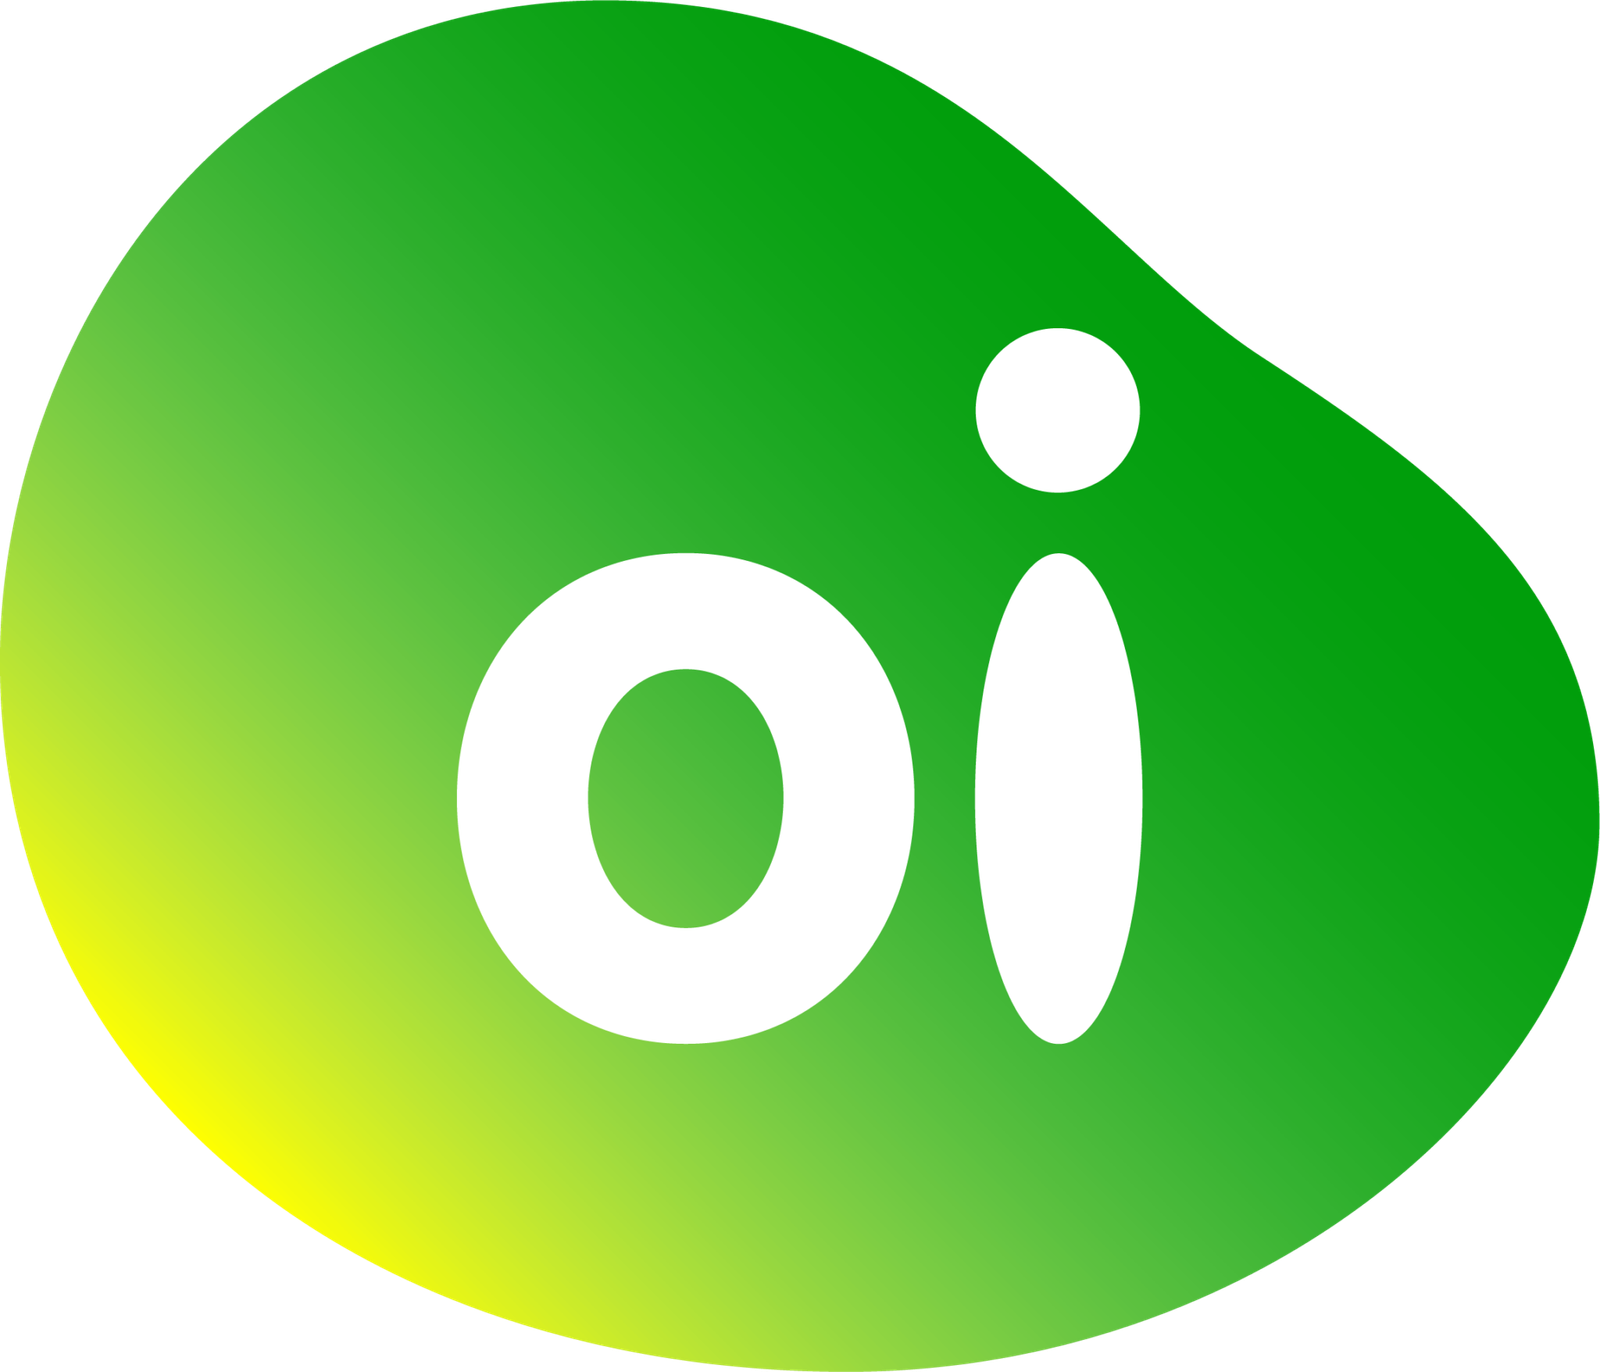 Oi_logo_2022